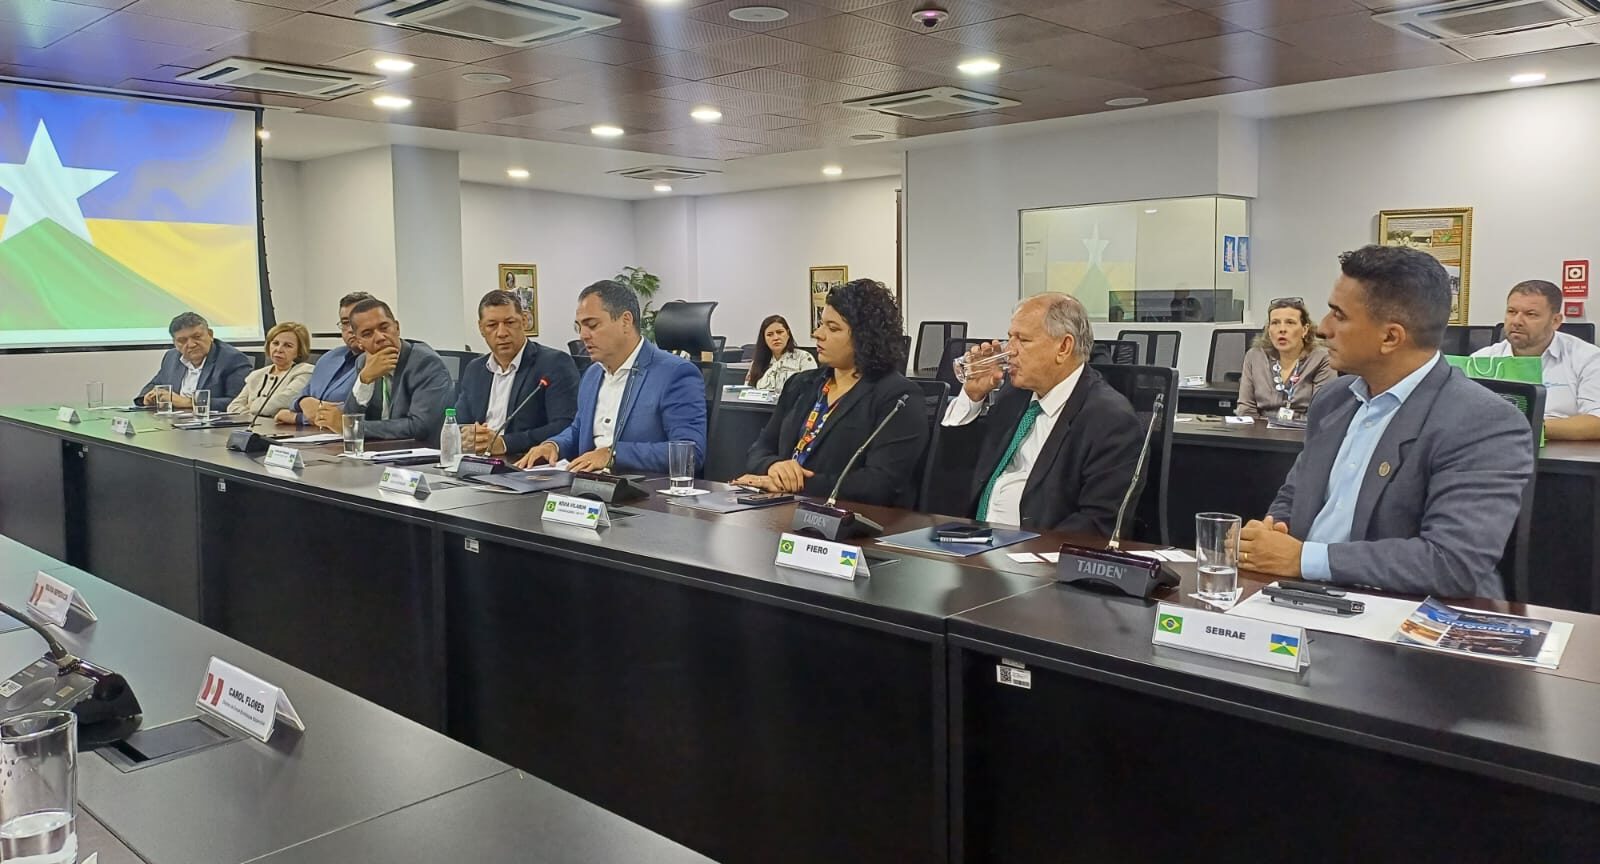 FACER acompanha Encontro de Negócios Brasil-Peru em Porto Velho